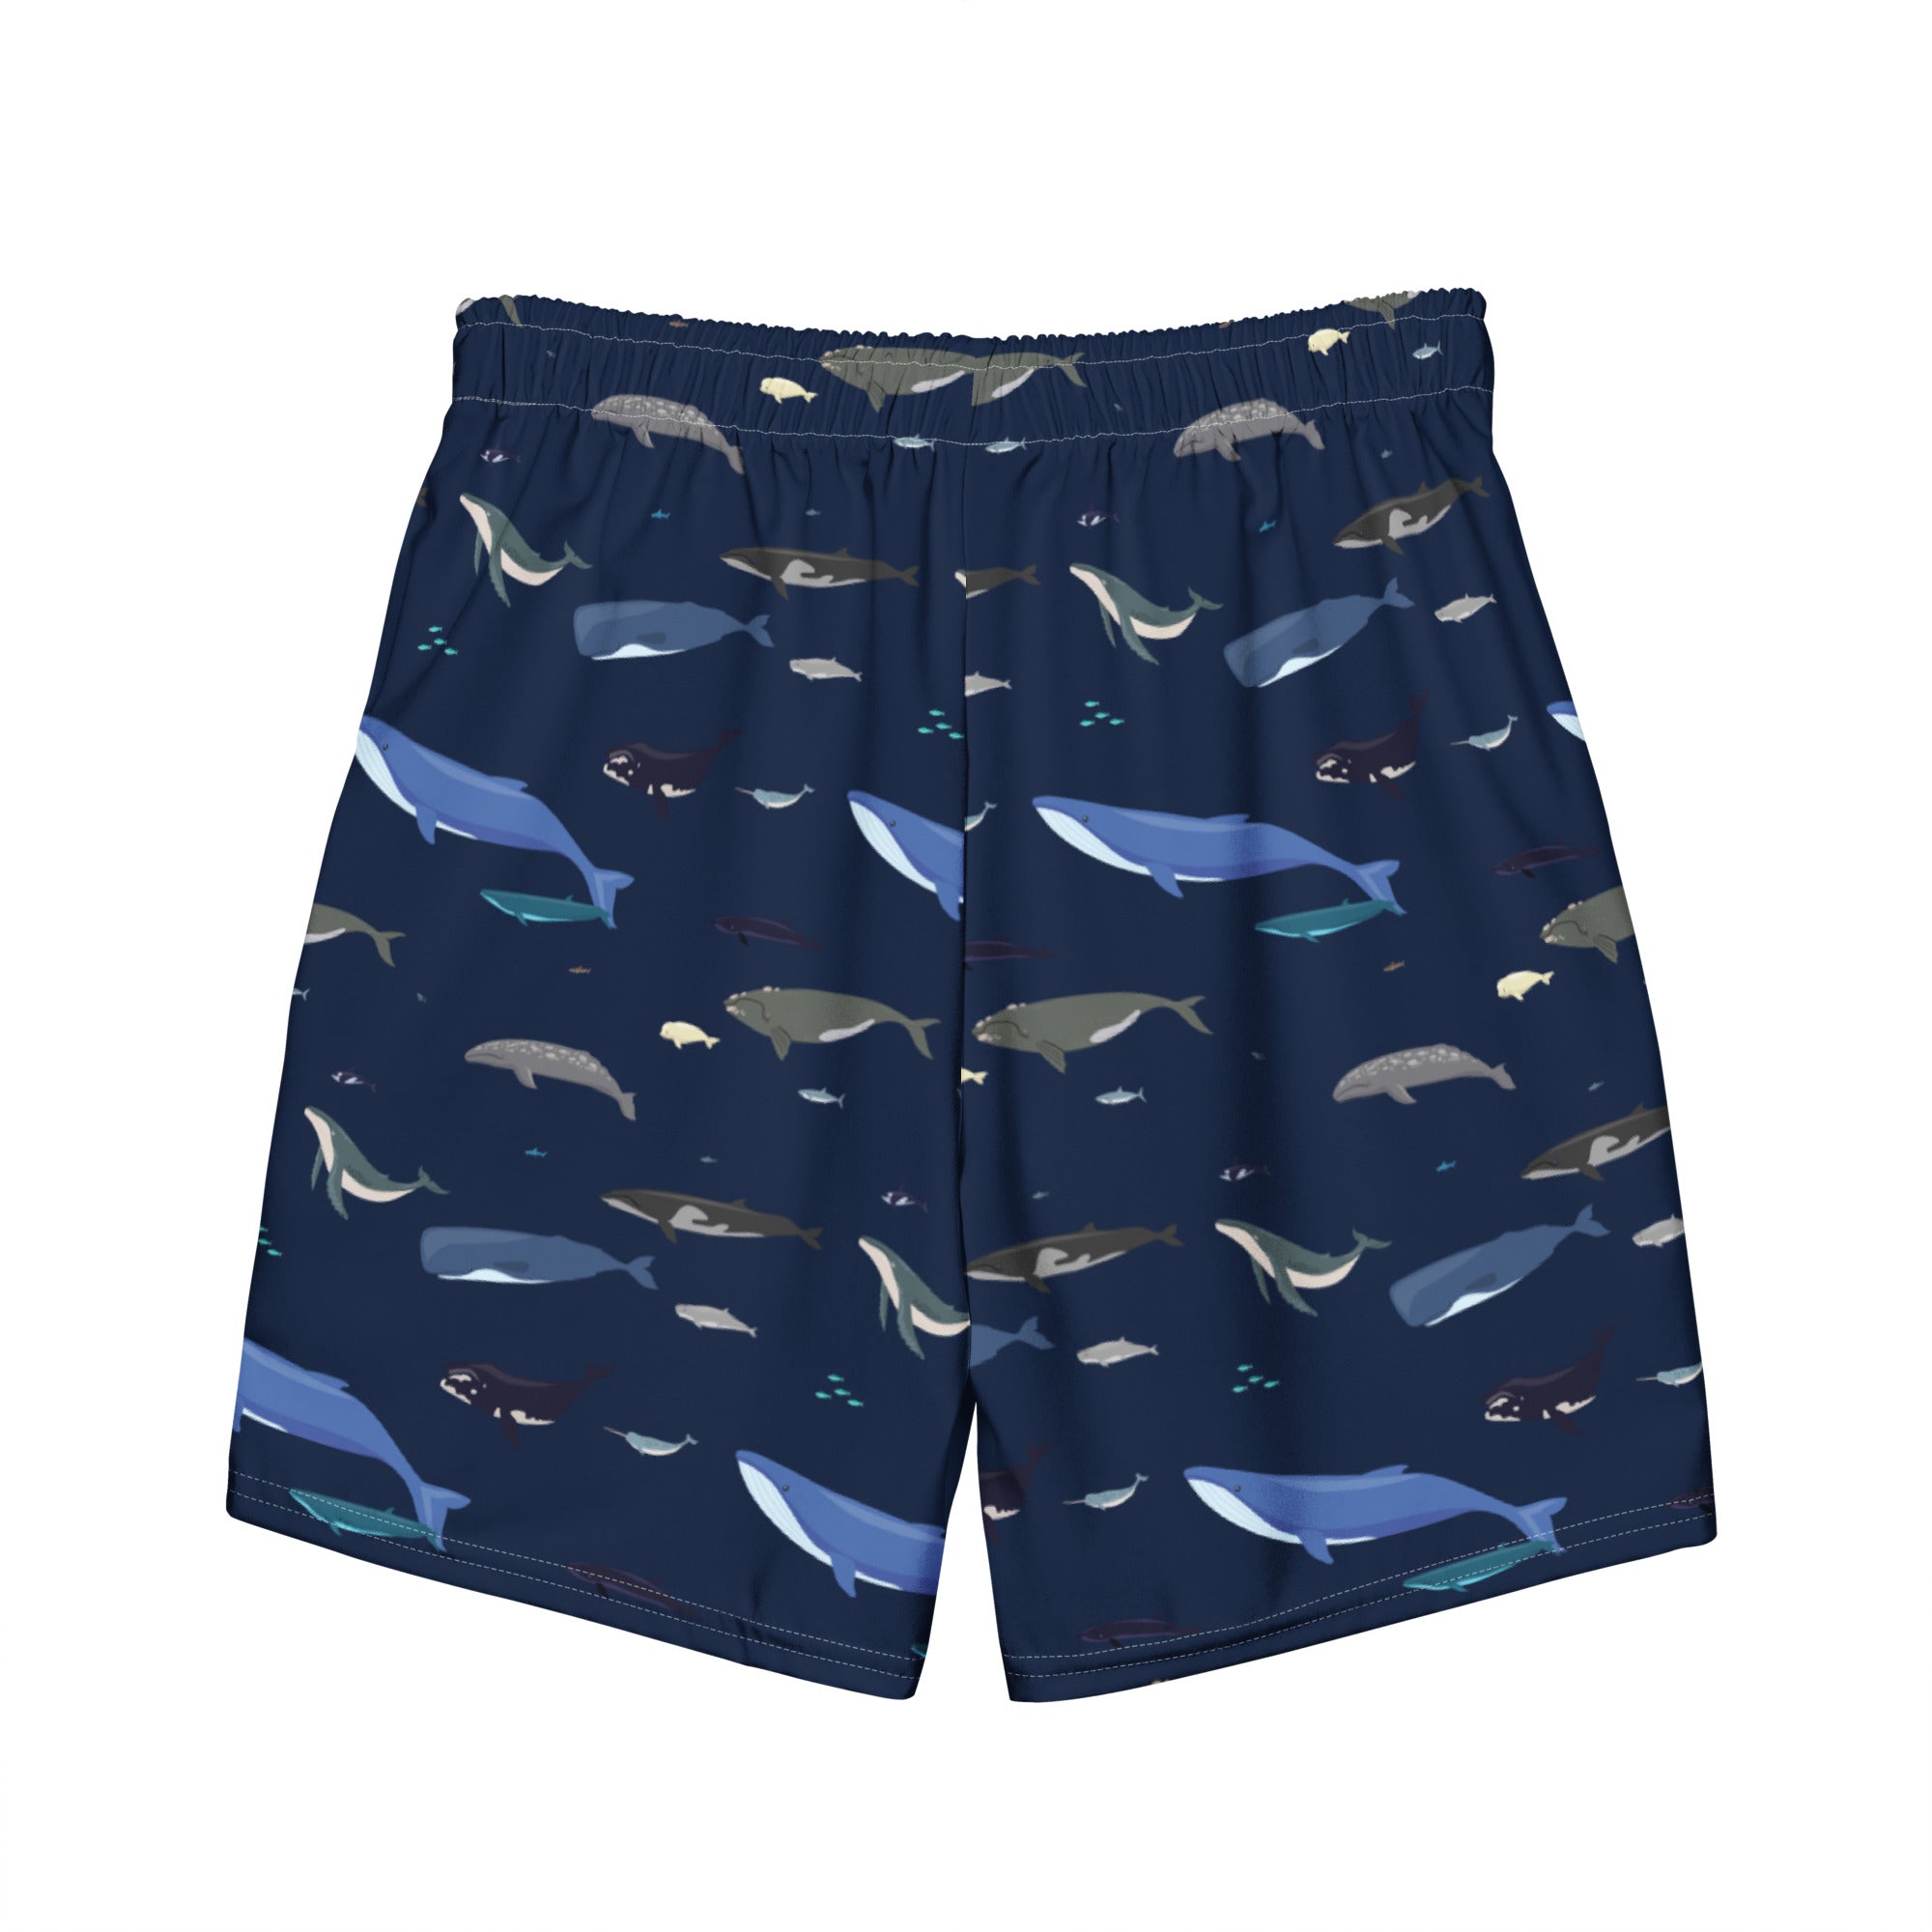 Whales Men's Swim Trunks